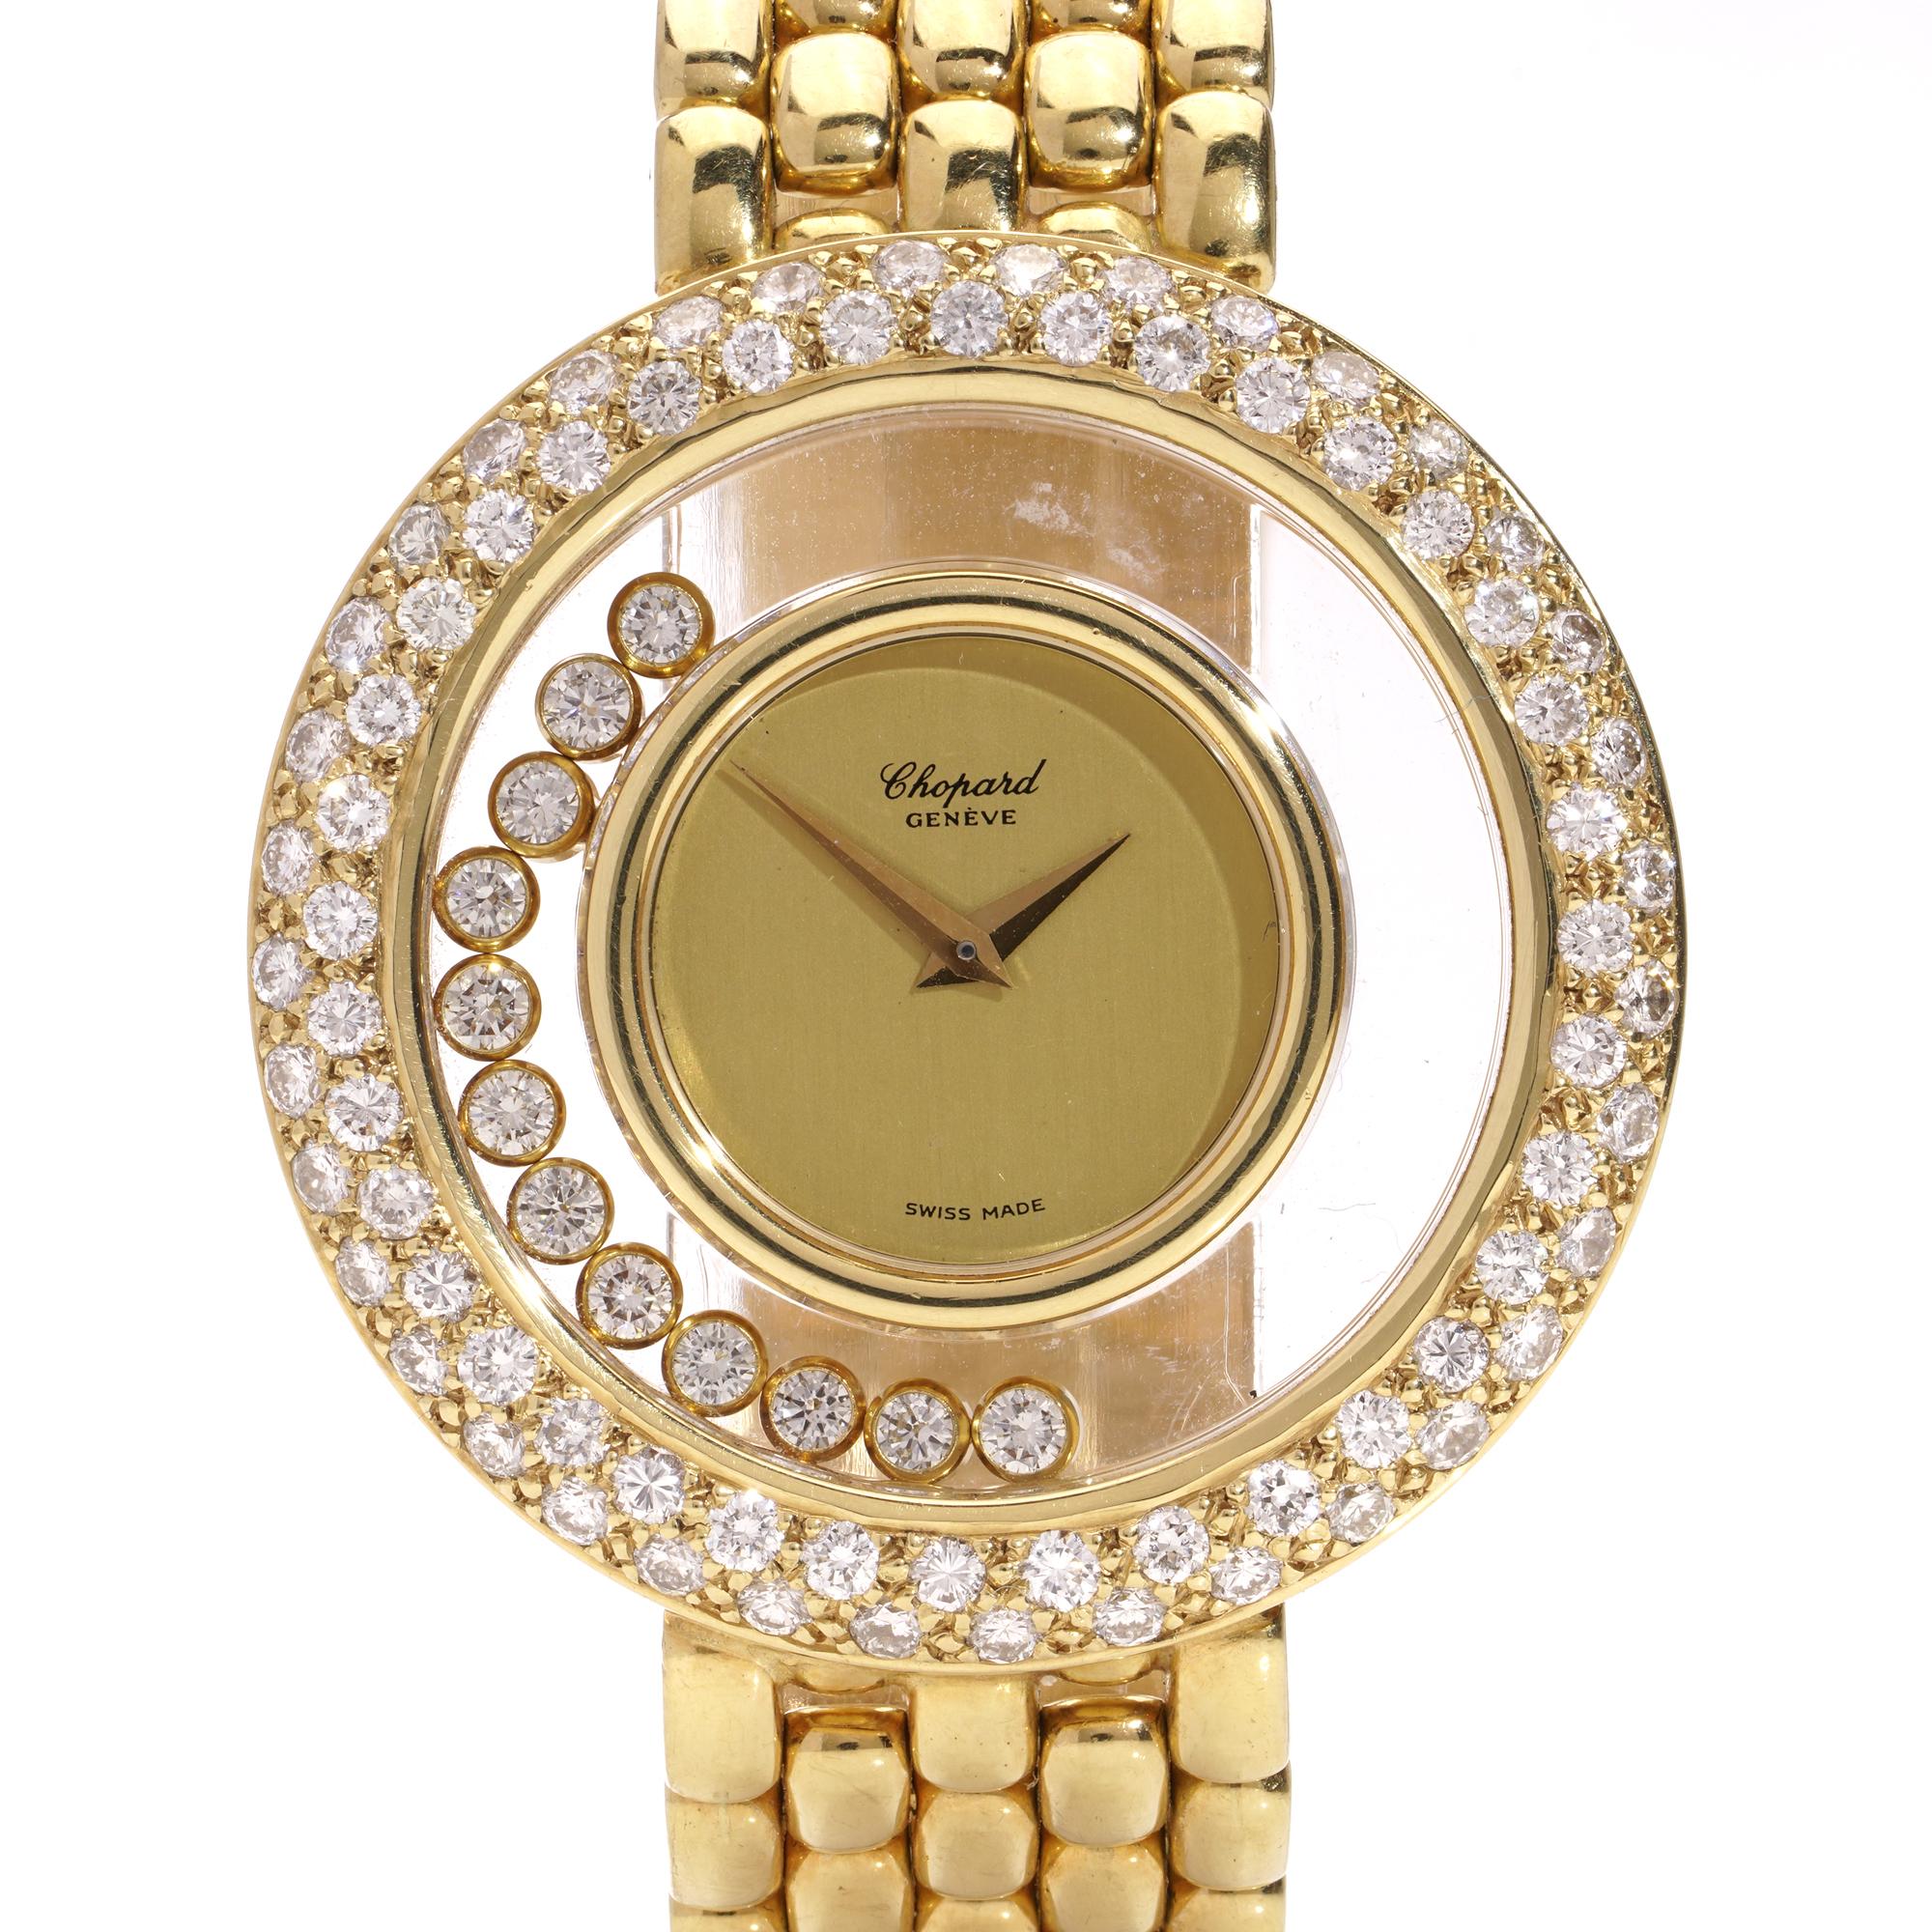 Chopard Happy Diamonds 18kt Gold Damen Quarz-Armbanduhr. 
Hergestellt in der Schweiz.

Jahr: Nach 2000
Aktenzeichen: 287875/1170
Größe des Innenkoffers: 20  mm
Volle Gehäusegröße: 36 mm
Uhrwerk: Quarz 
Zifferblatt: Gold 
MATERIAL des Gehäuses: 18kt